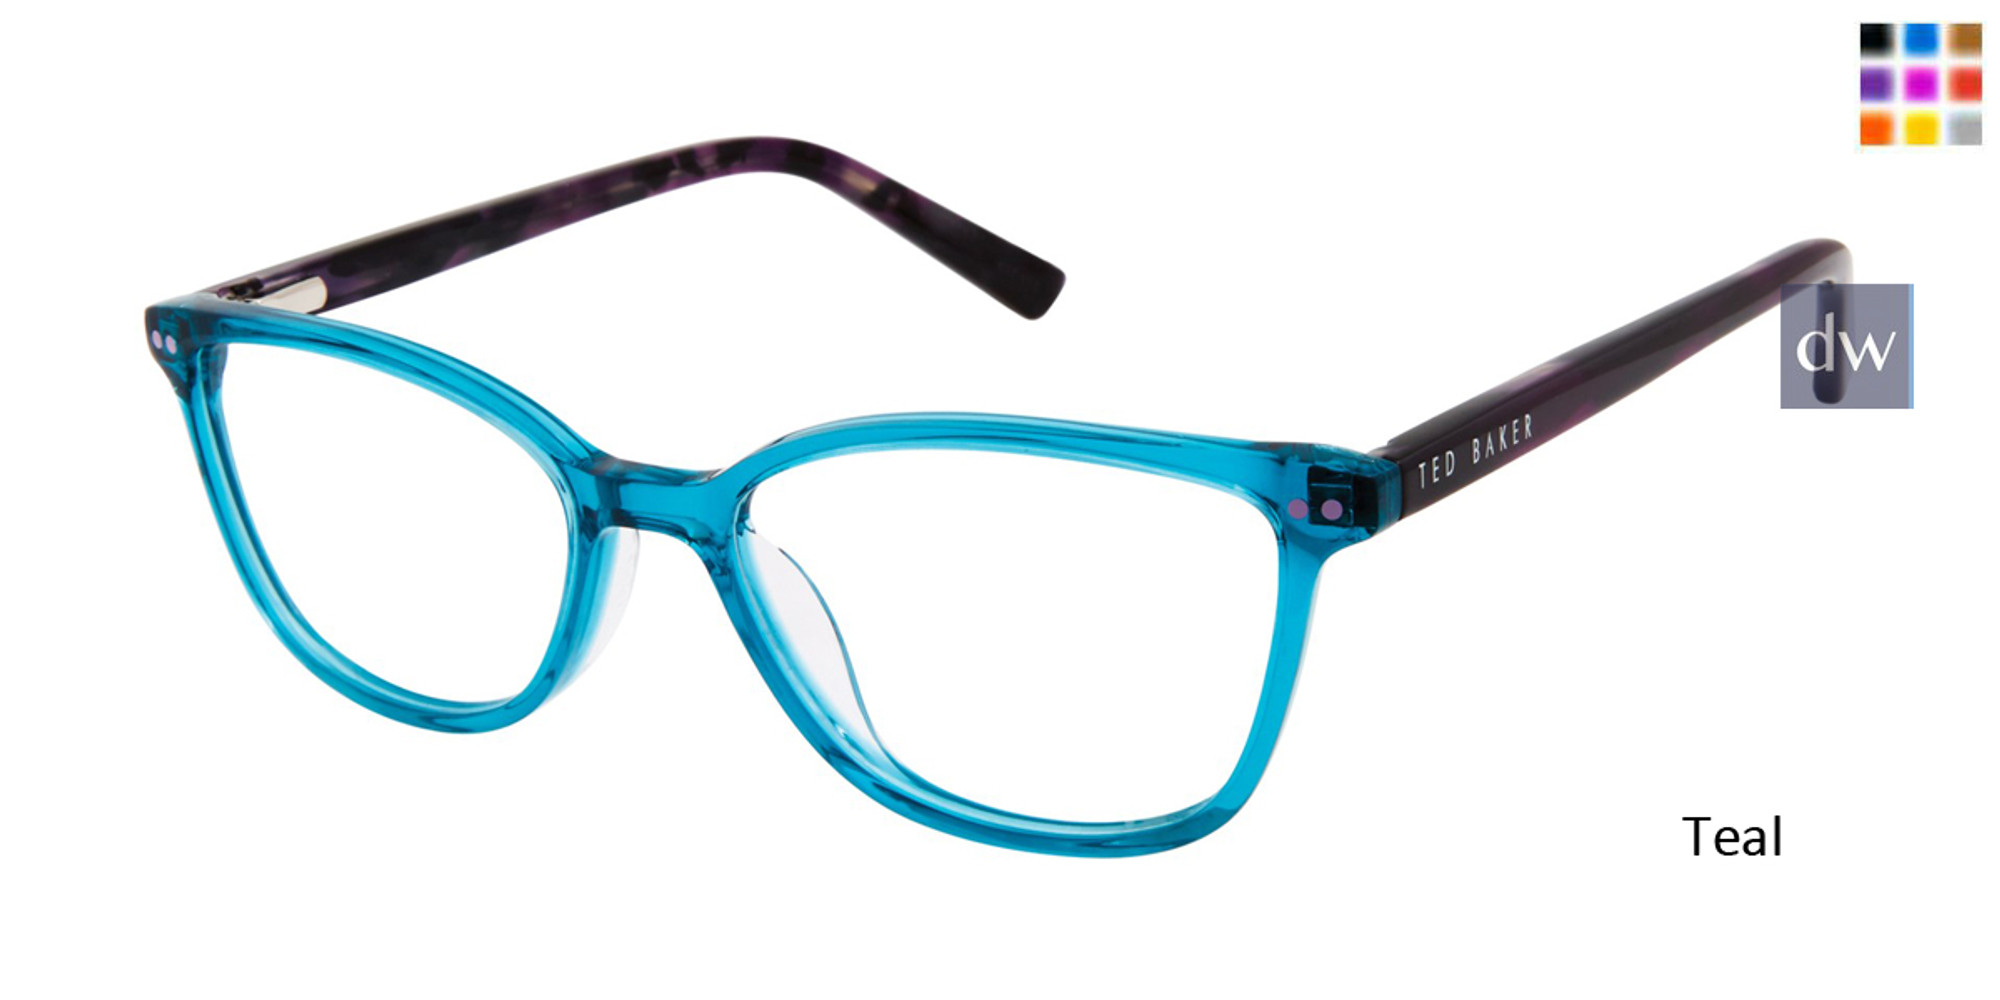 Ted Baker B969 Eyeglasses - Daniel Walters Eyewear